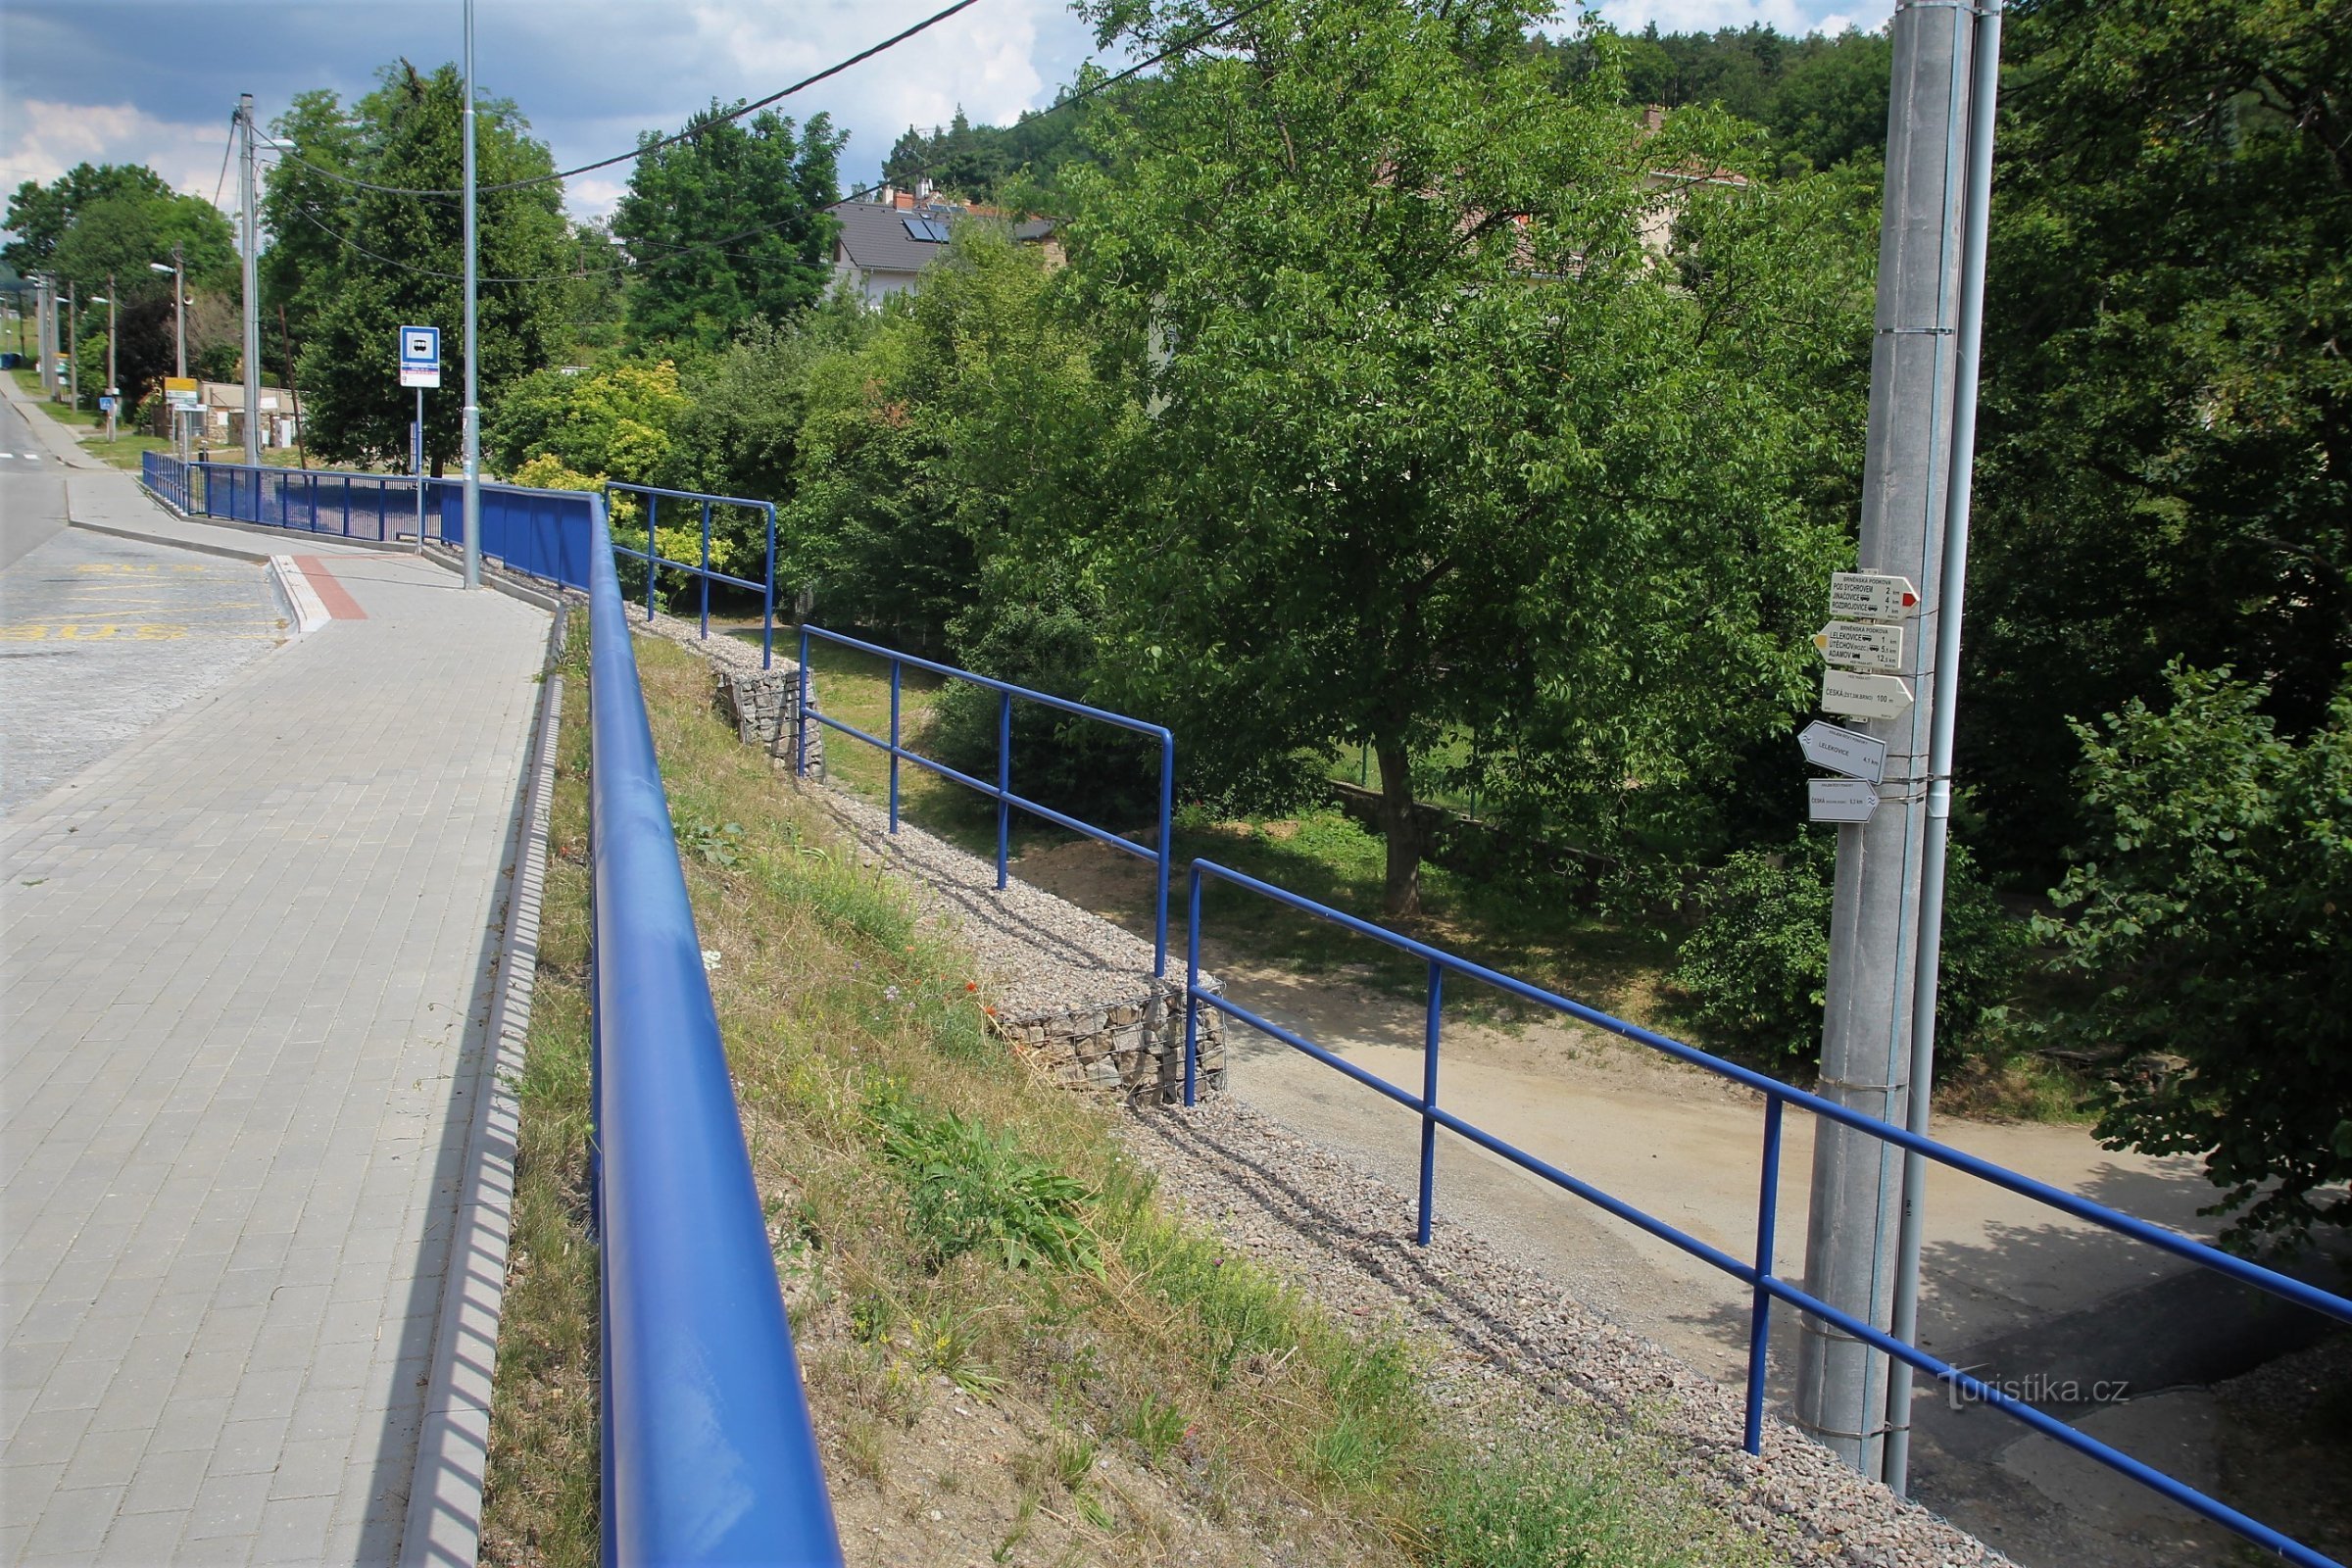 Junção turística Česká, estação ferroviária